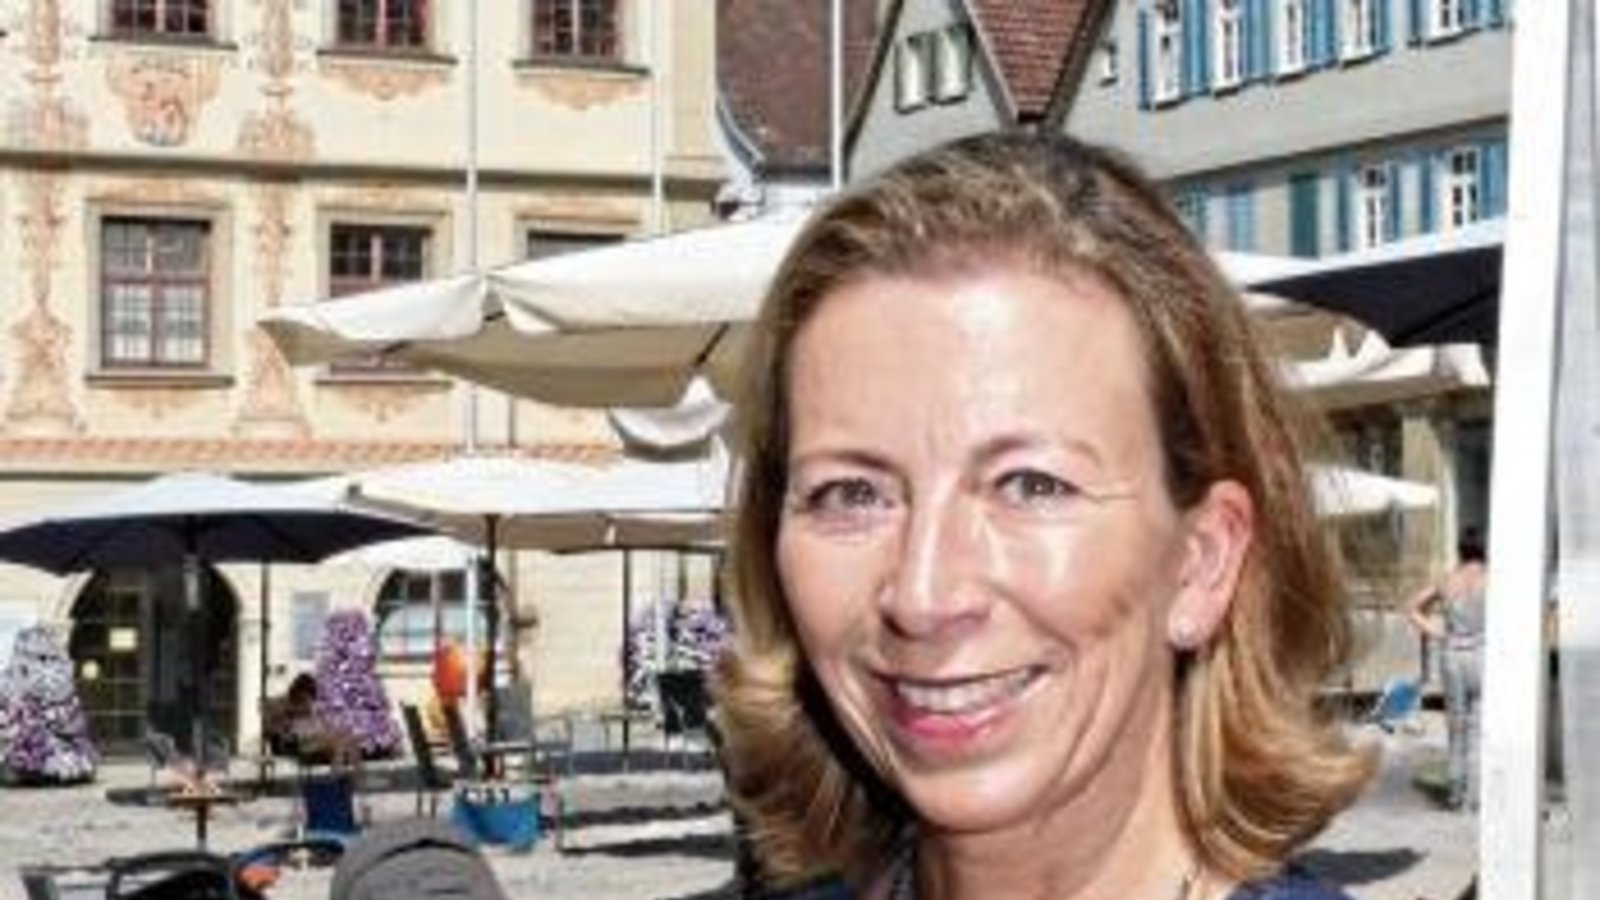 Stefanie Knecht ist die Bundestagskandidatin der FDP für die Wahl am 24. September. Links ist ihr Liebingsbild, das sie der VKZ geschickt hat: Es zeigt Knecht beim Einkauf auf dem Wochenmarkt in Ludwigsburg. Kleines Bild oben: Die Kandidatin in dieser Woc